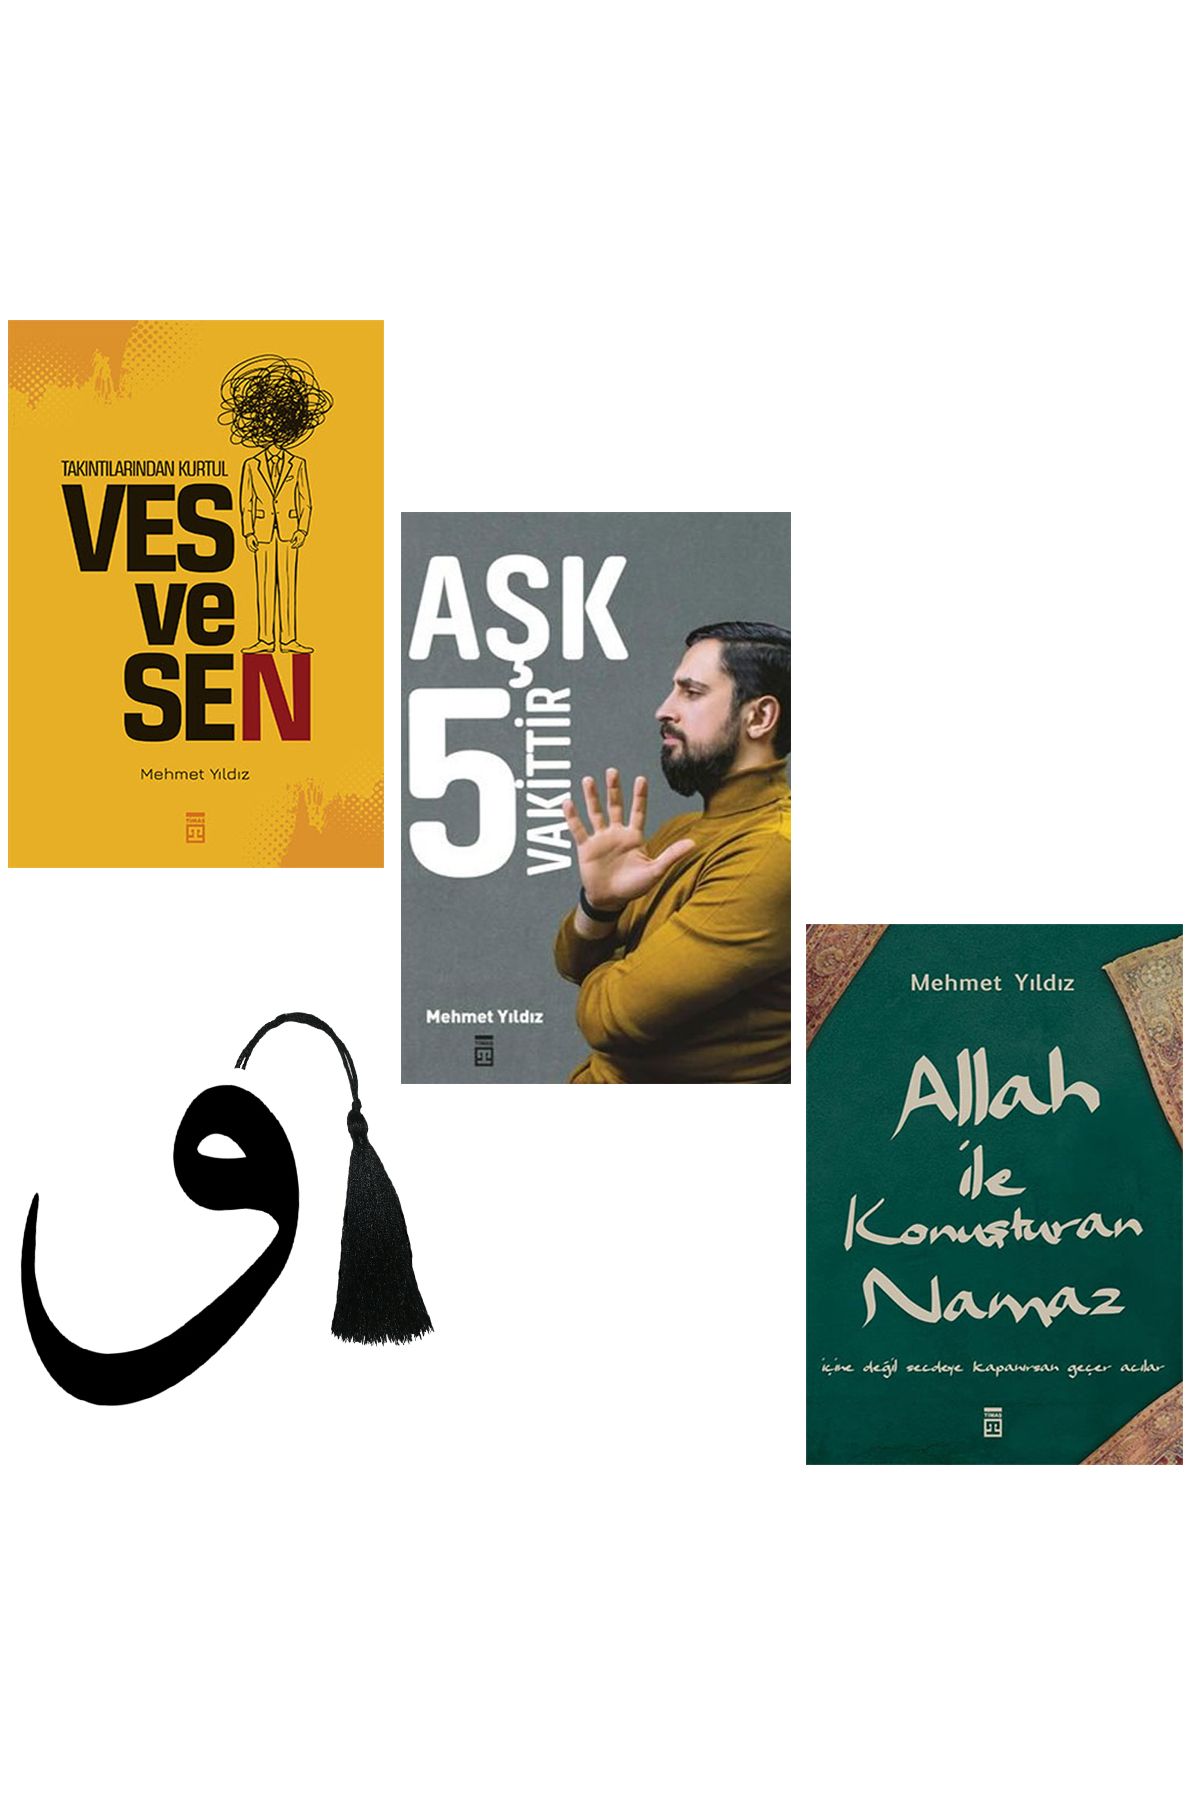 Timaş Yayınları Mehmet Yıldız - vesvesen - aşk 5 vakittir - Allah ile konuşturan namaz -yırtılmaz vav ayraç hediye